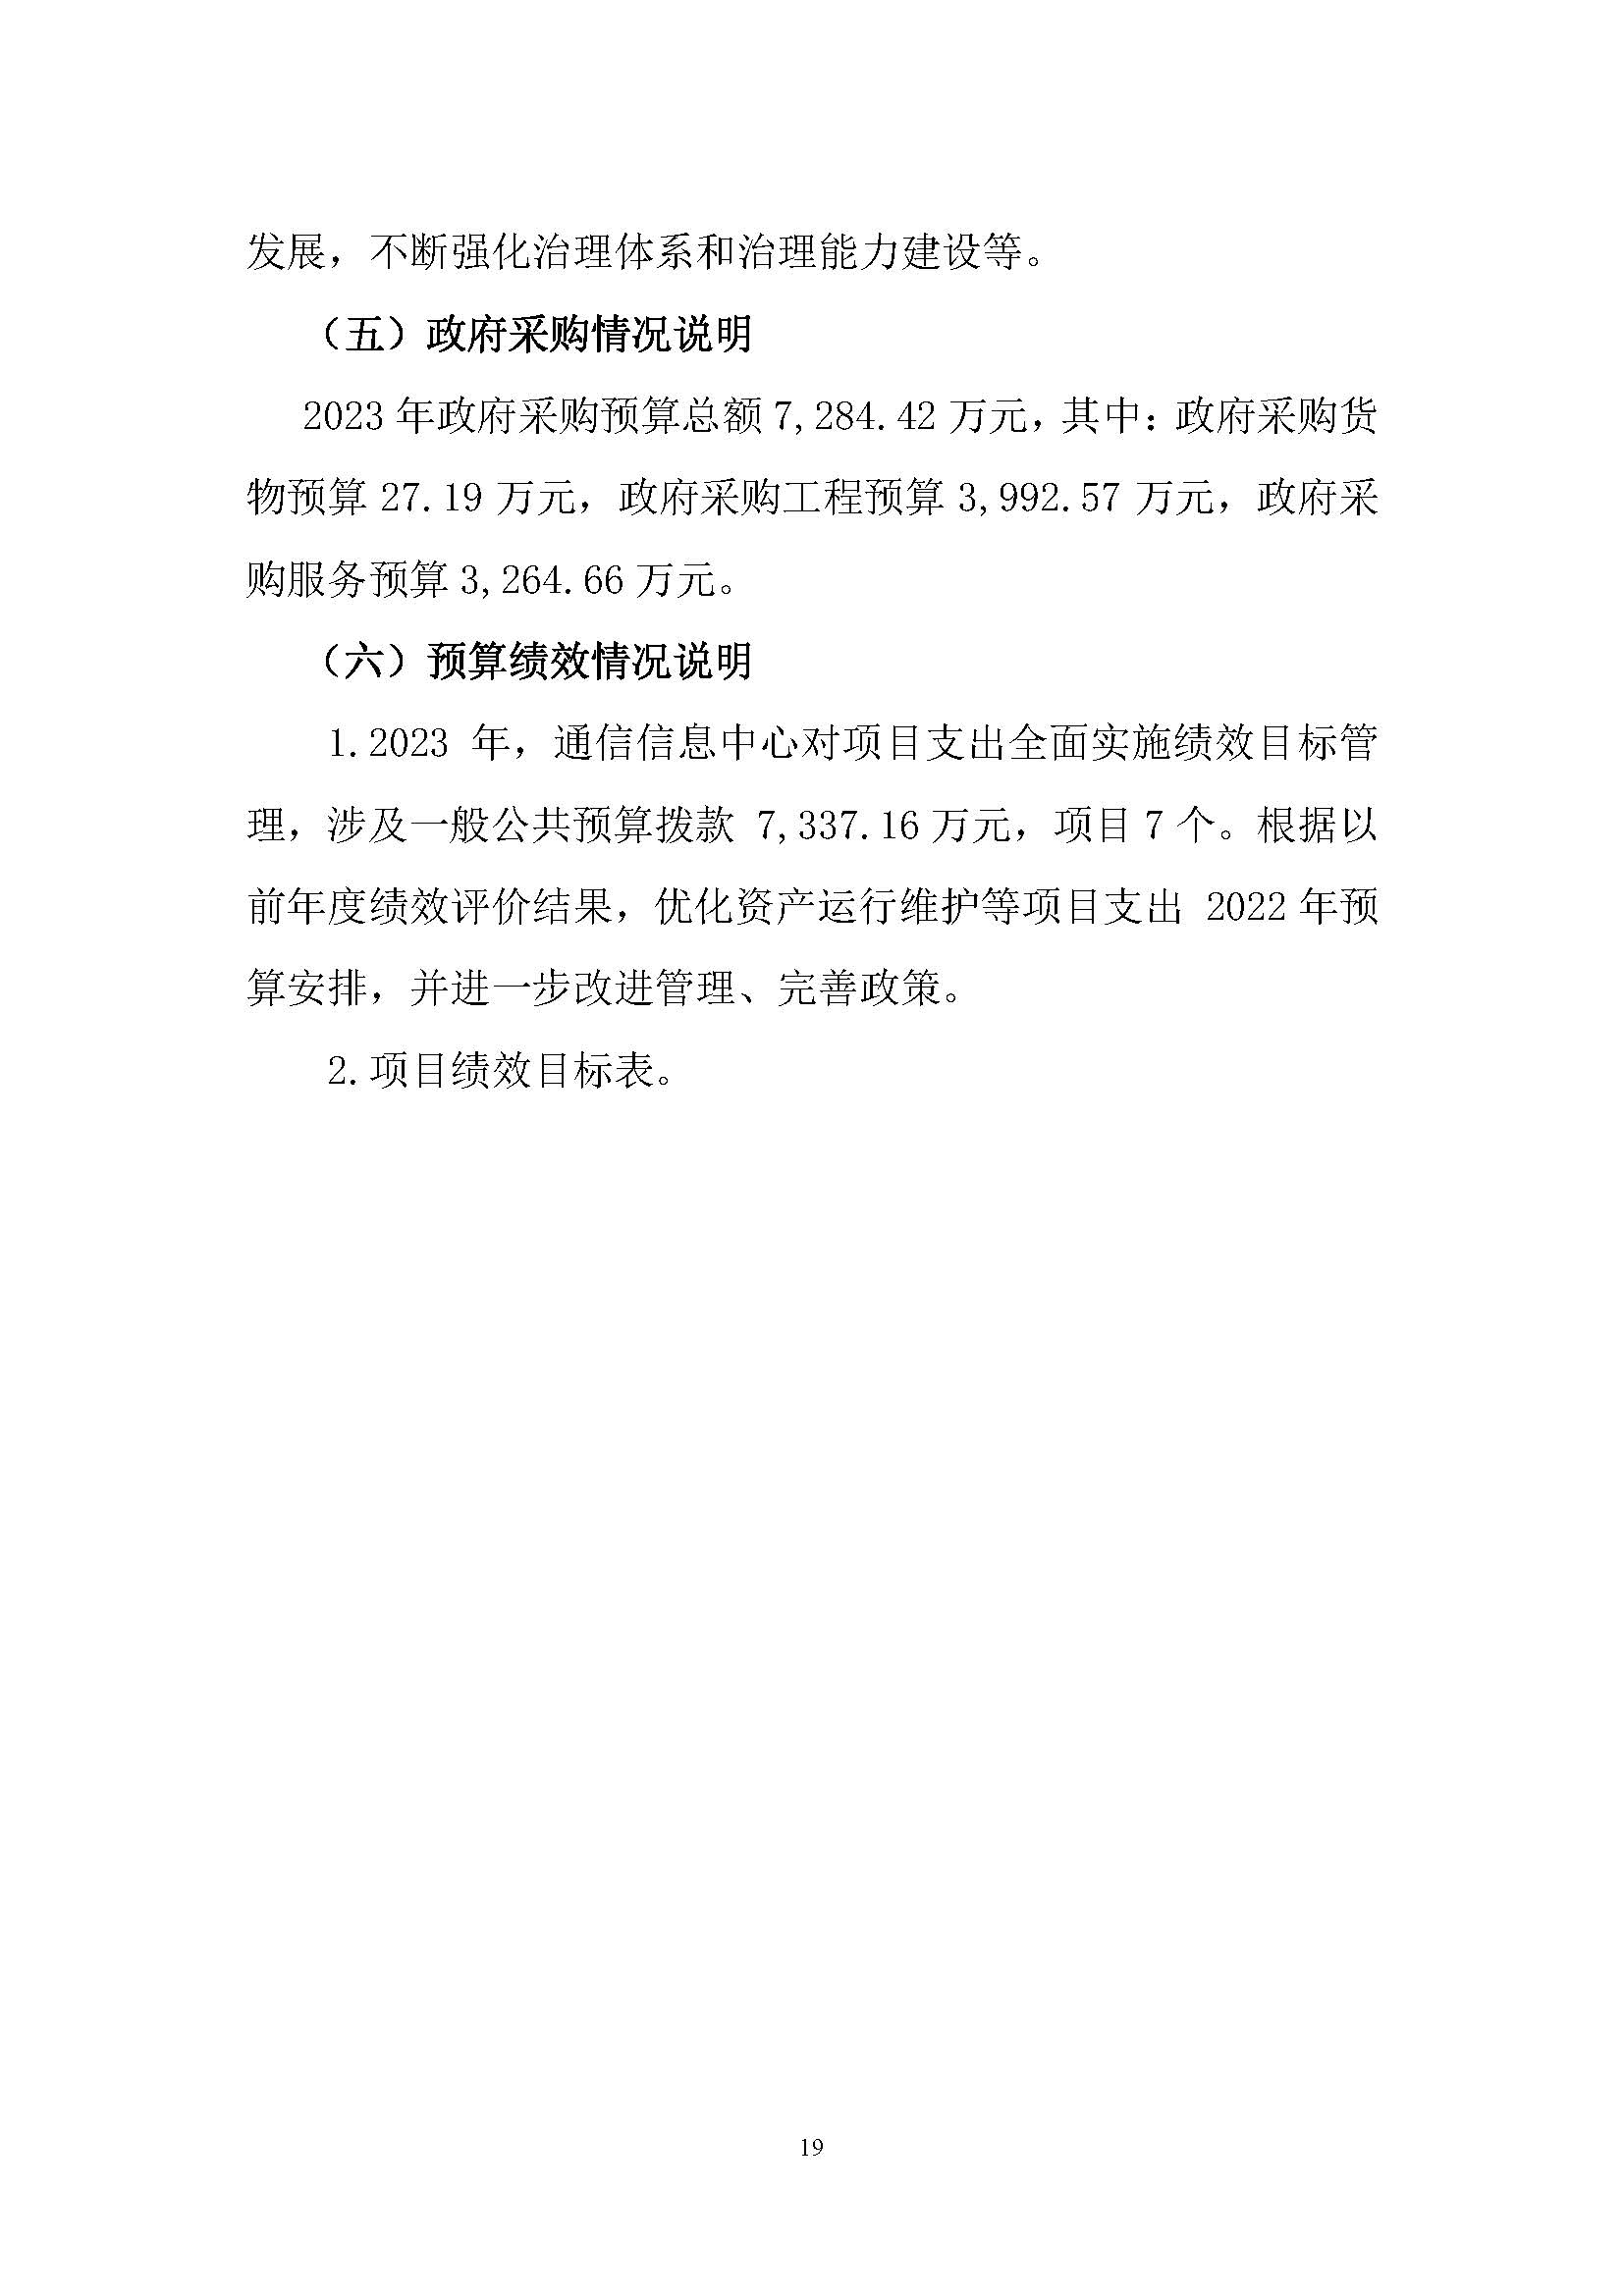 中国交通通信信息中心2023年度部门预算0420_页面_19.jpg